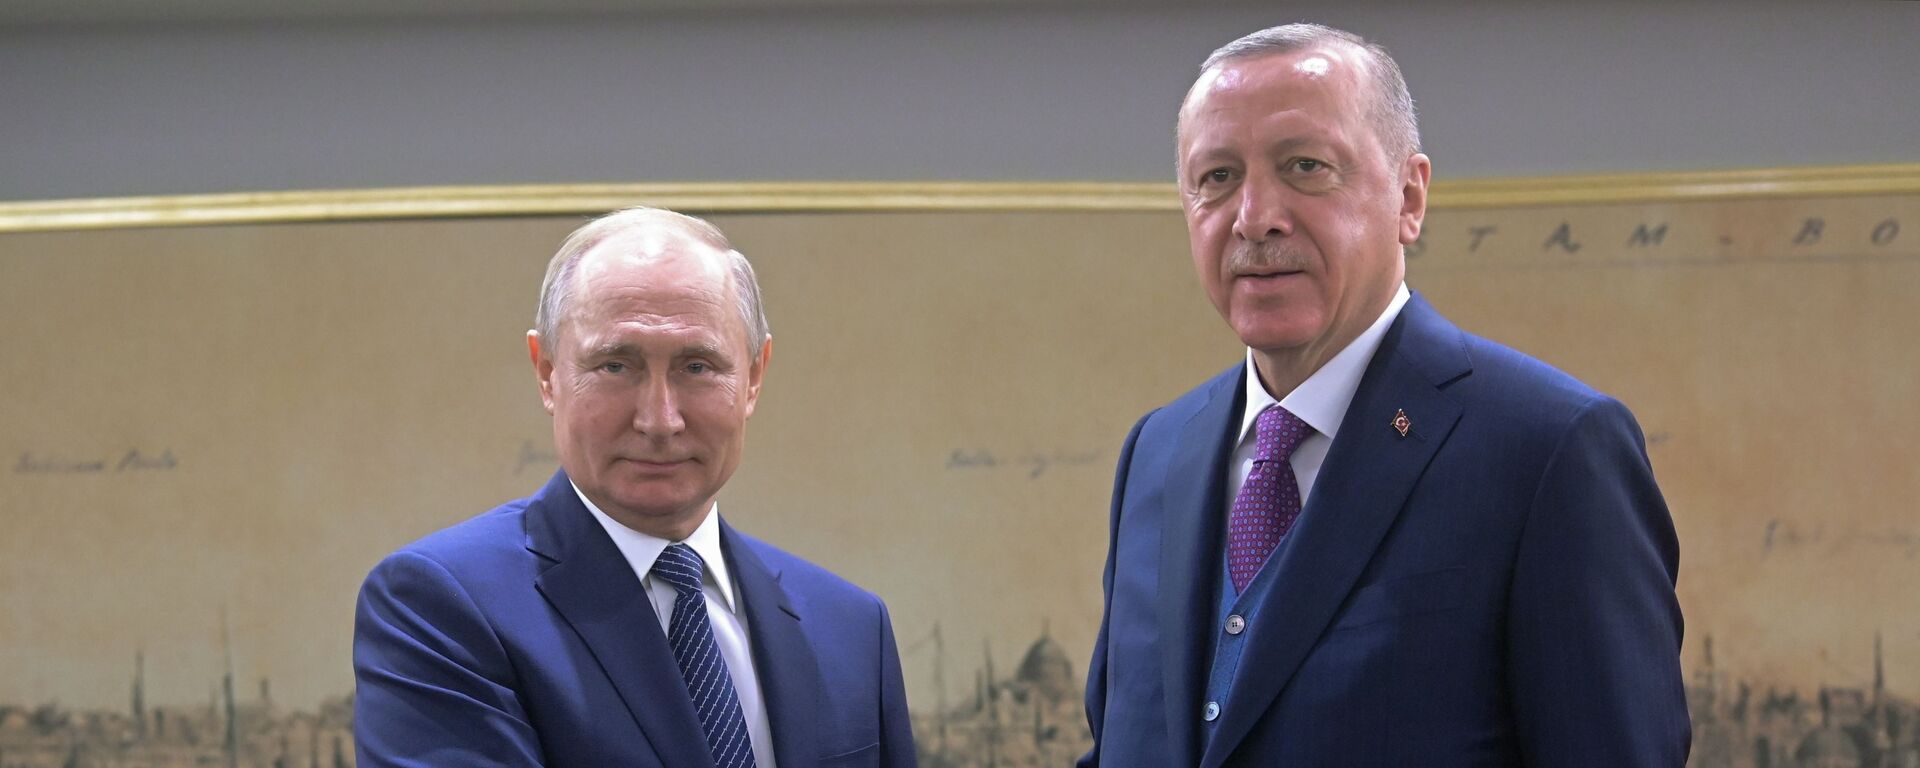 O presidente russo Vladimir Putin aperta a mão do presidente turco Recep Tayyip Erdogan durante reunião em Istambul, Turquia. - Sputnik Brasil, 1920, 15.08.2022